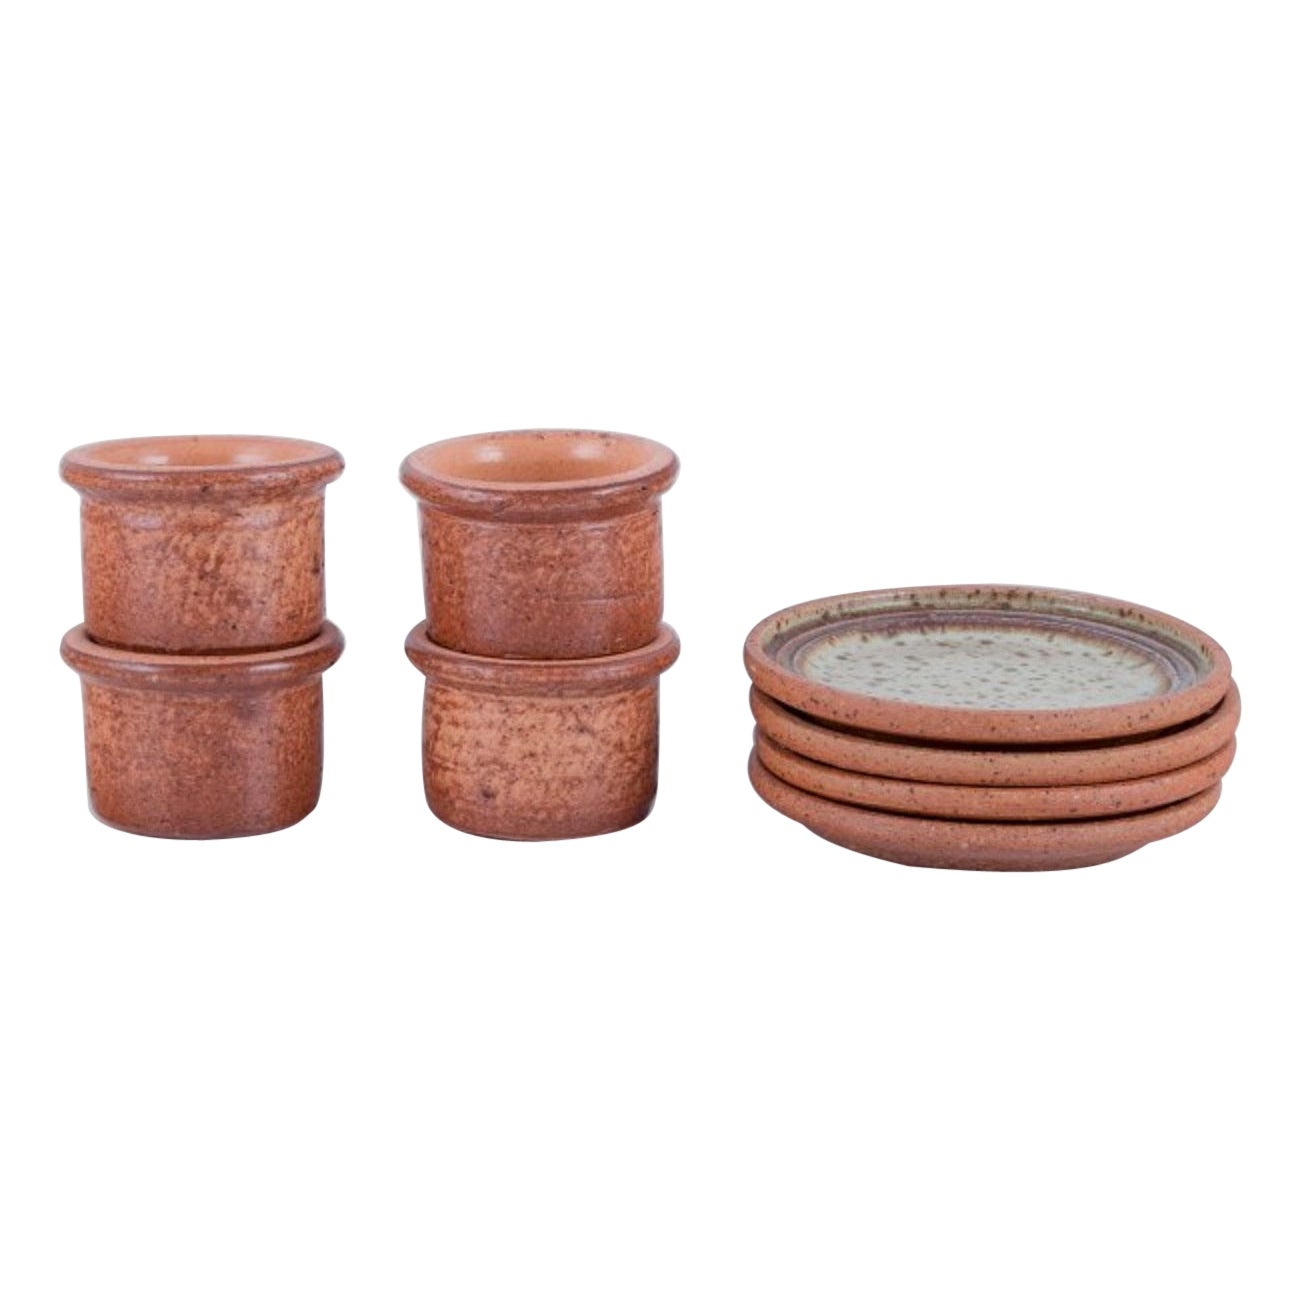 Stouby Keramik. Ensemble de quatre petits vases en céramique faits à la main et quatre assiettes